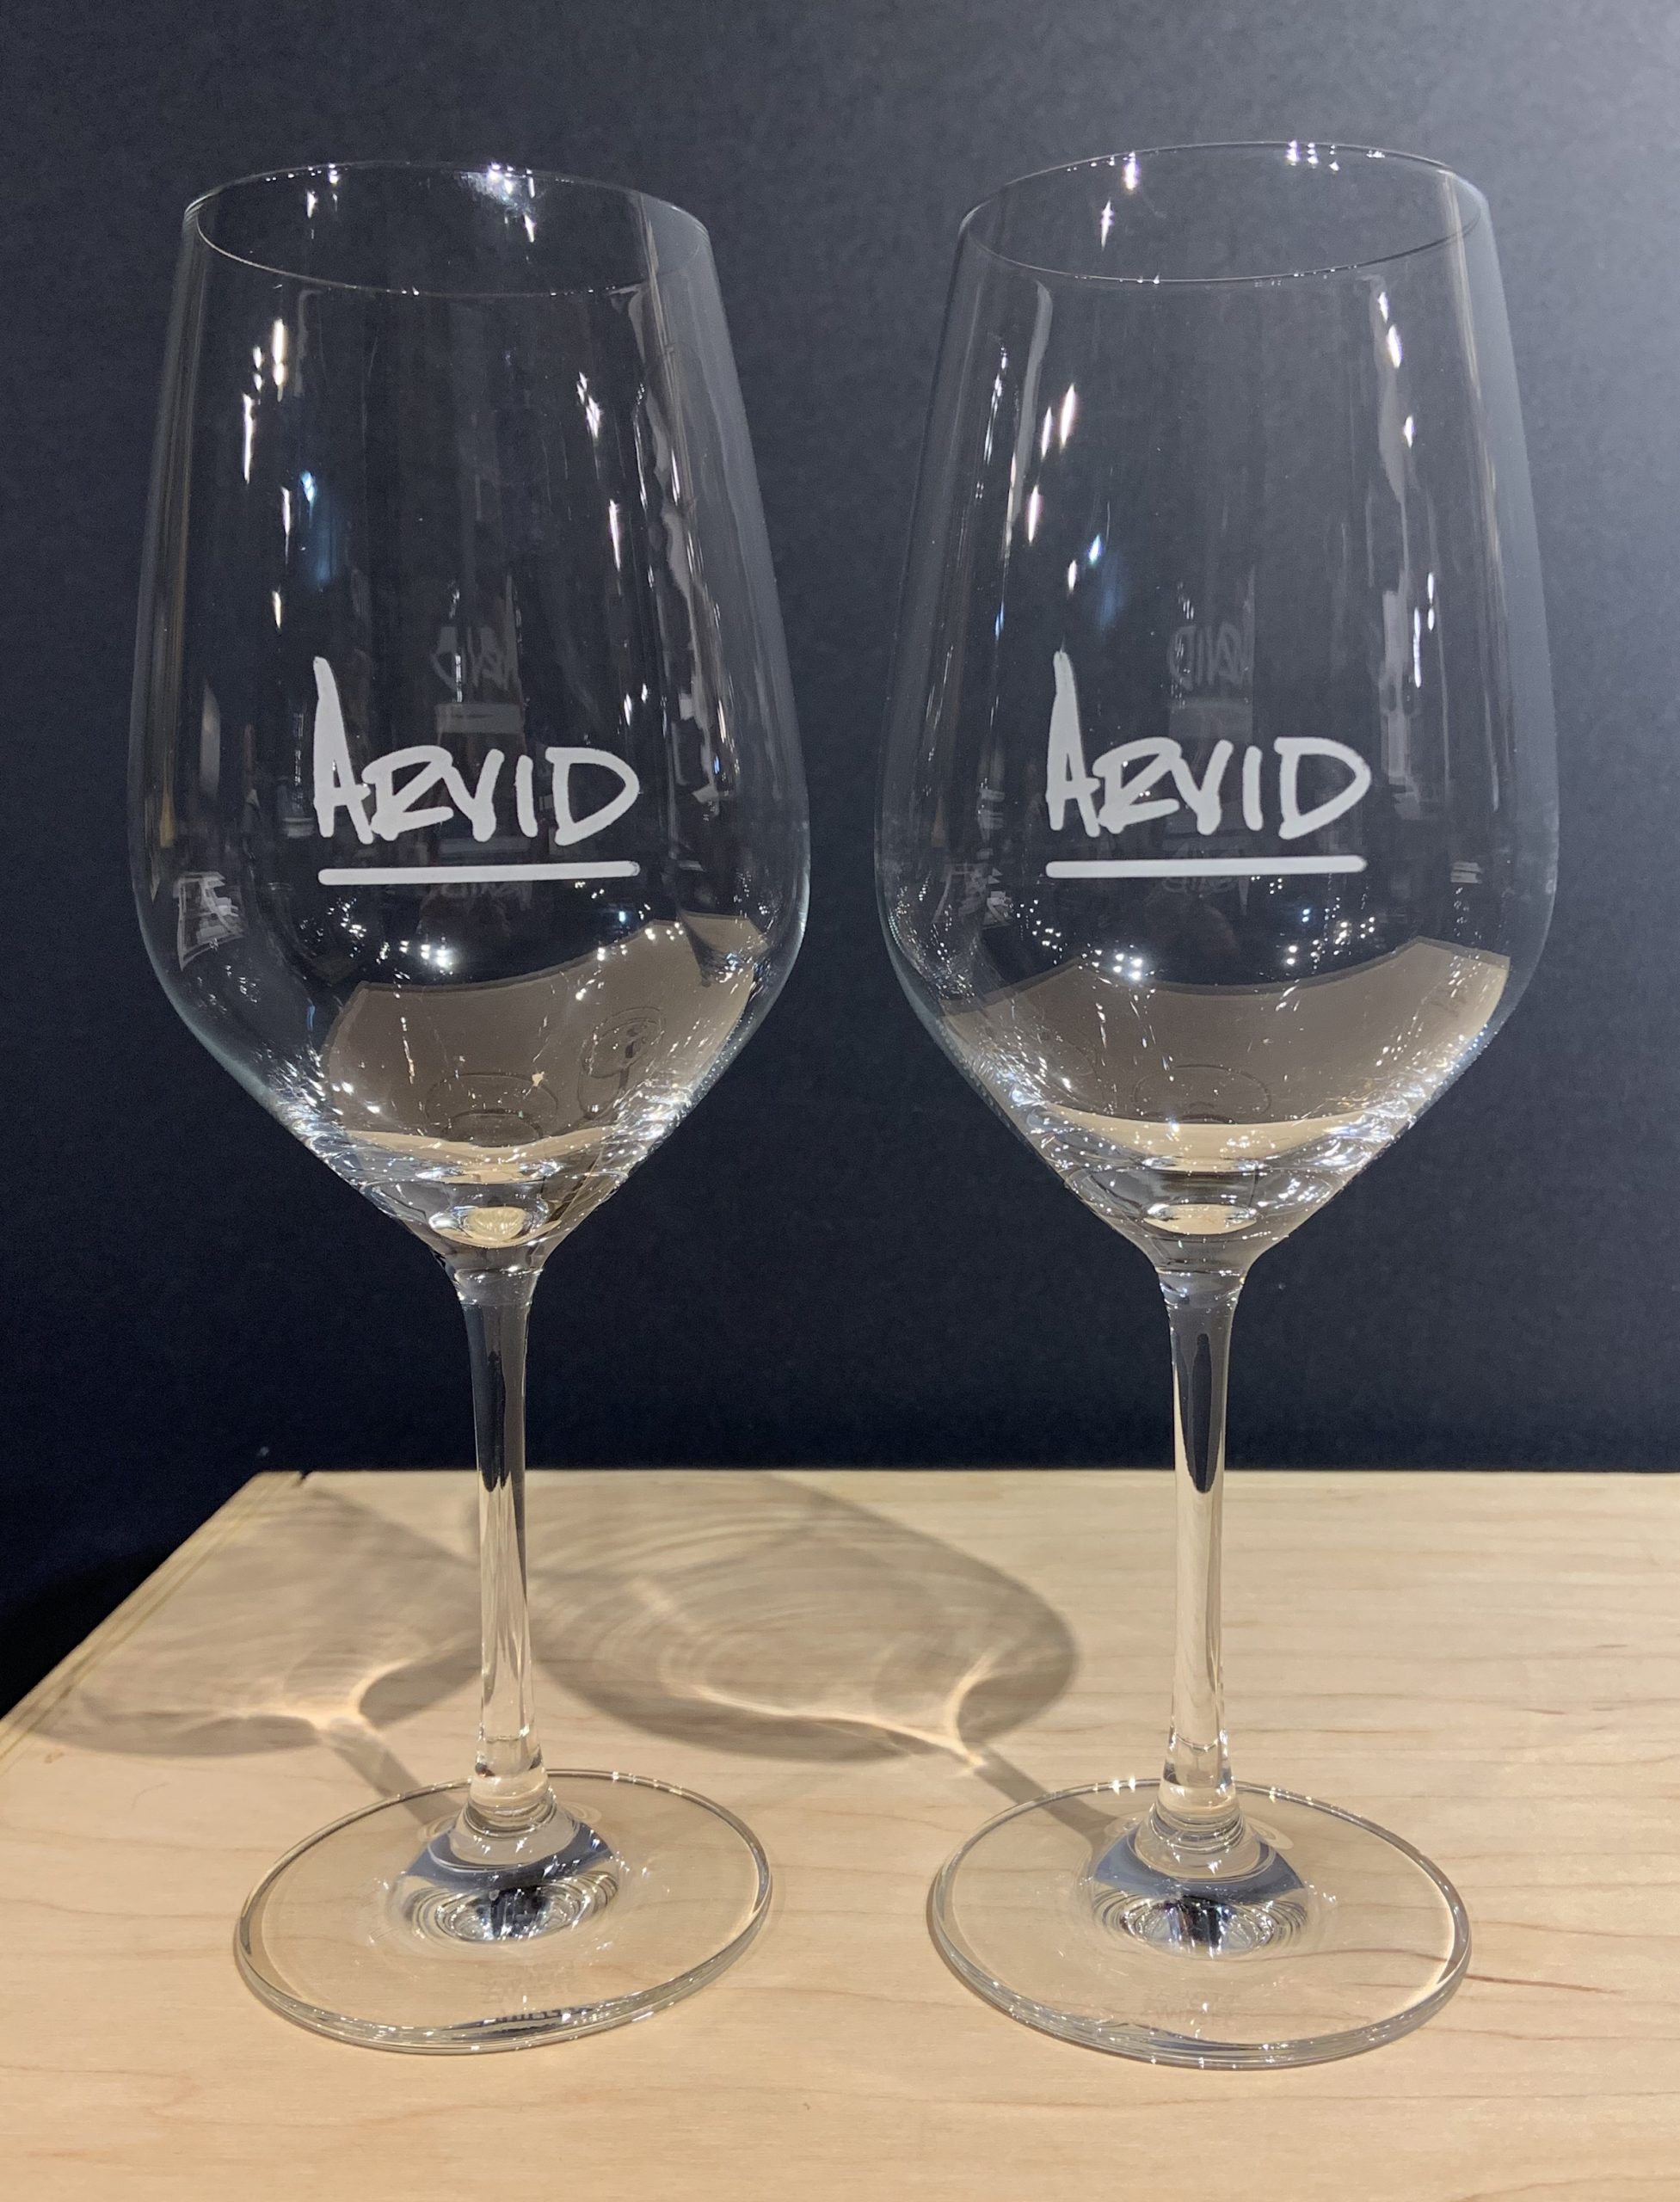 Arvid Logo Wine Glasses (6) • Thomas Arvid Wine Paintings